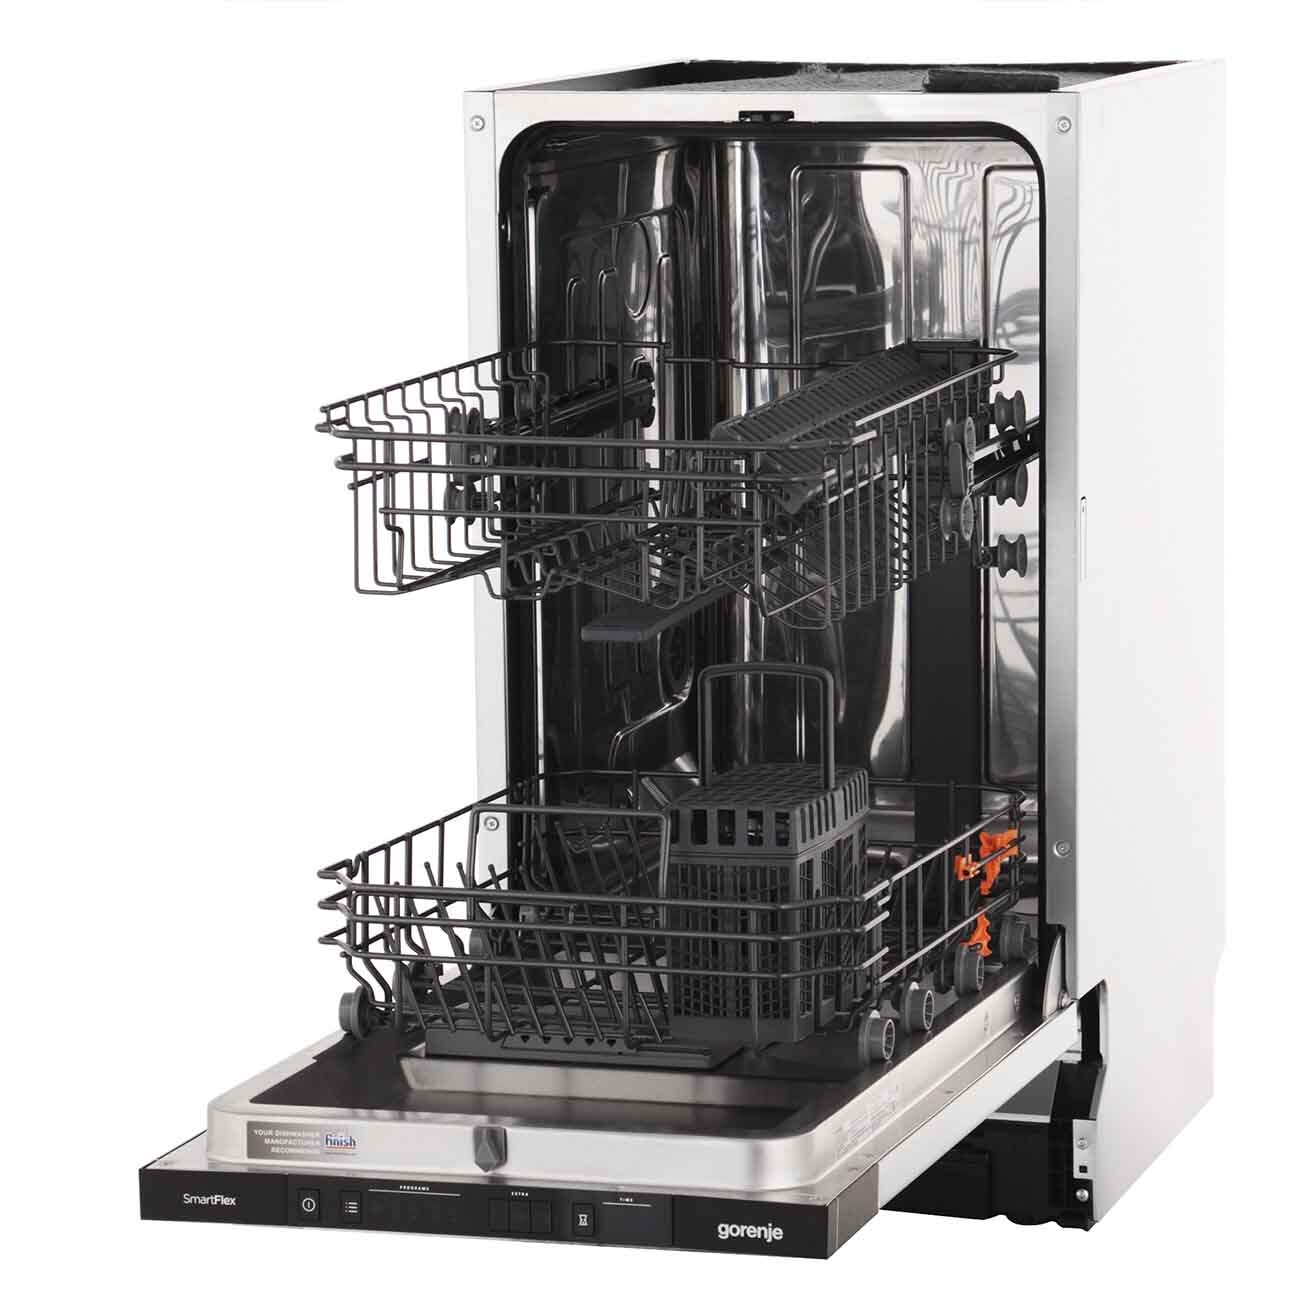 Пмм горенье. Посудомоечная машина Gorenje gv531e10. Встраиваемая посудомоечная машина 45 см Gorenje gv531e10. Gorenje посудомоечная машина 45 встраиваемая. Посудомоечная машина Gorenje встраиваемая 45 см.